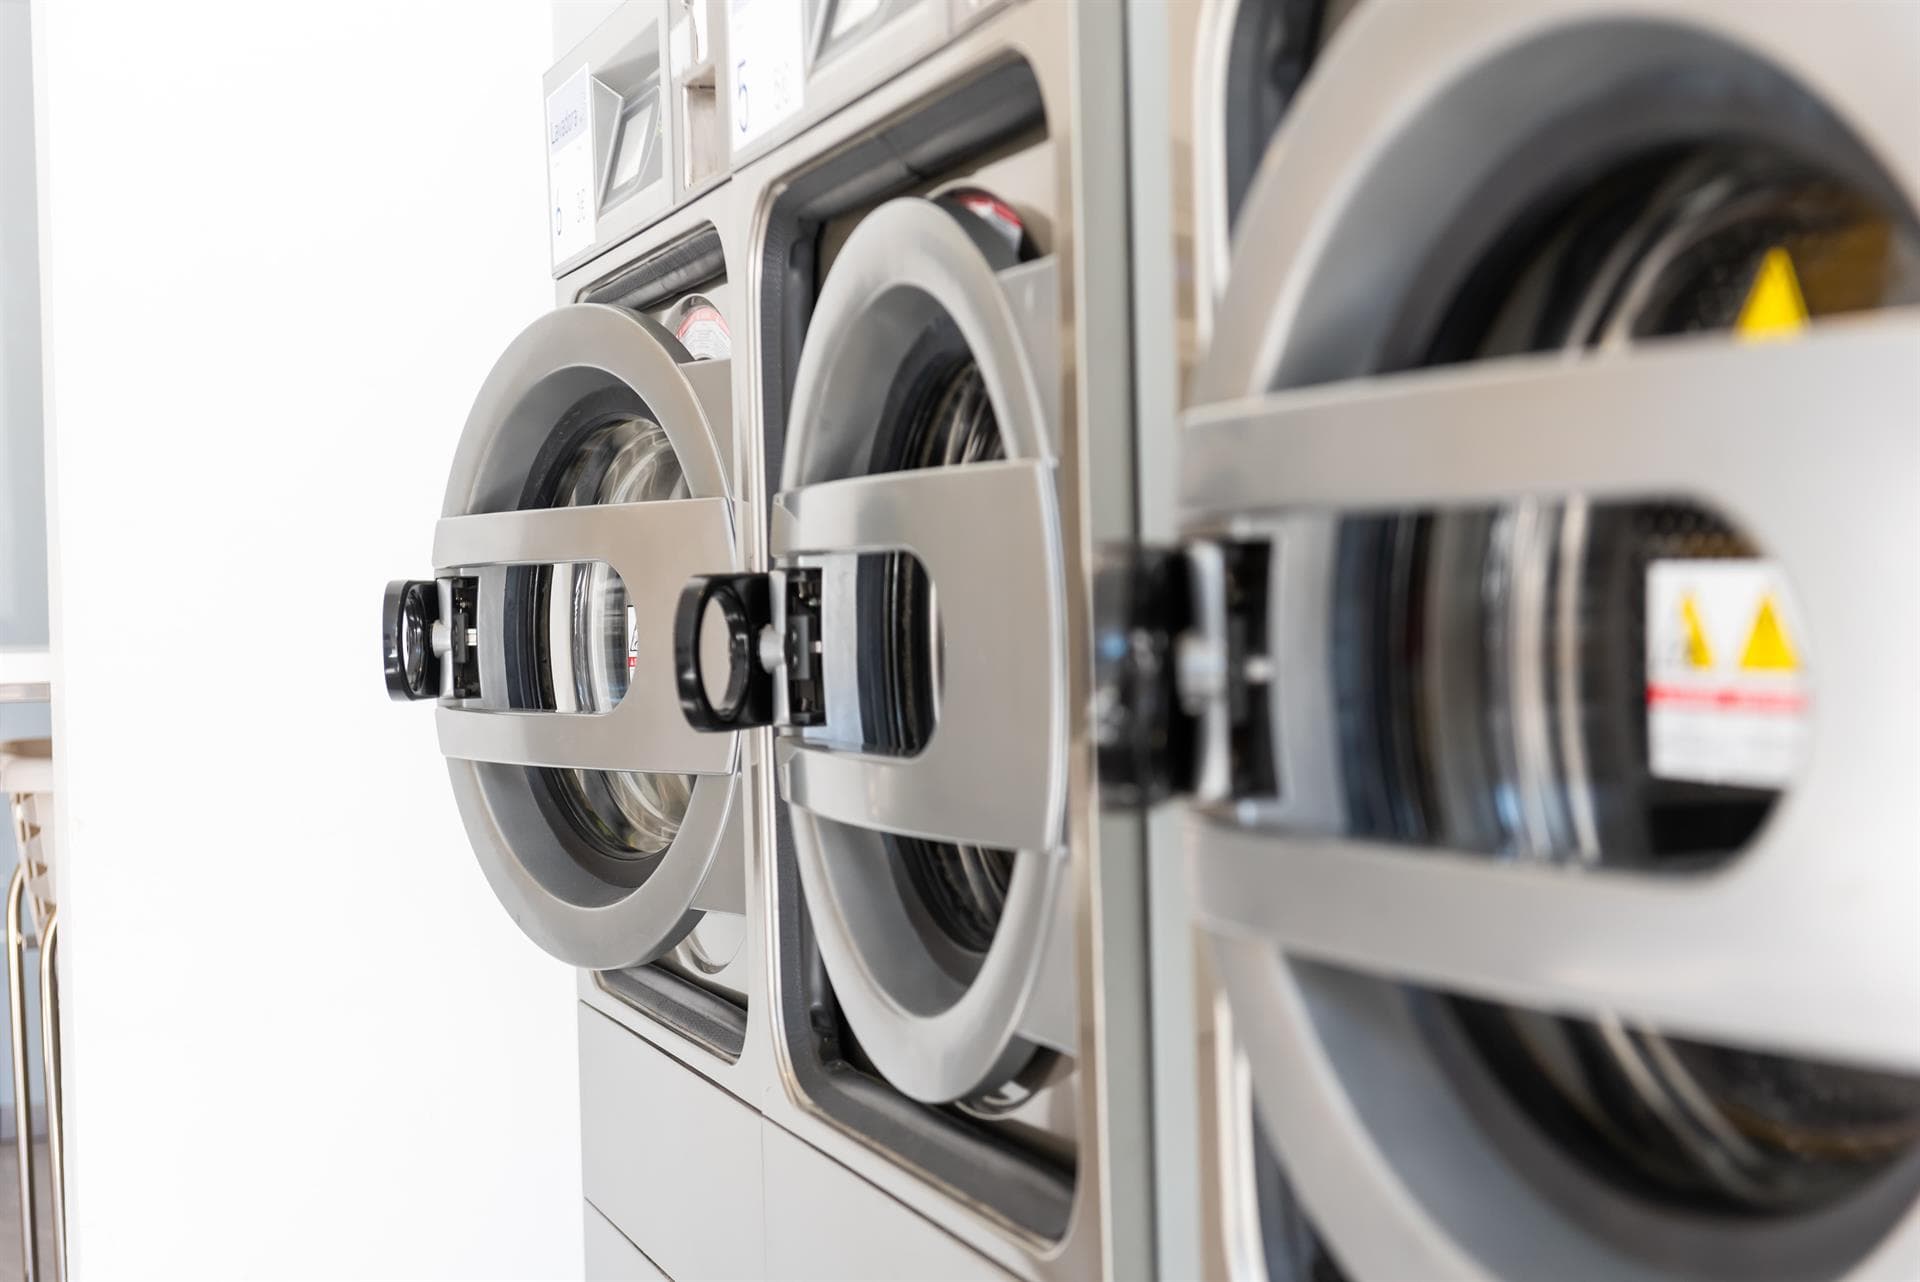 1 2 3 Wash - Servicios de tu lavandería de confianza en Vigo